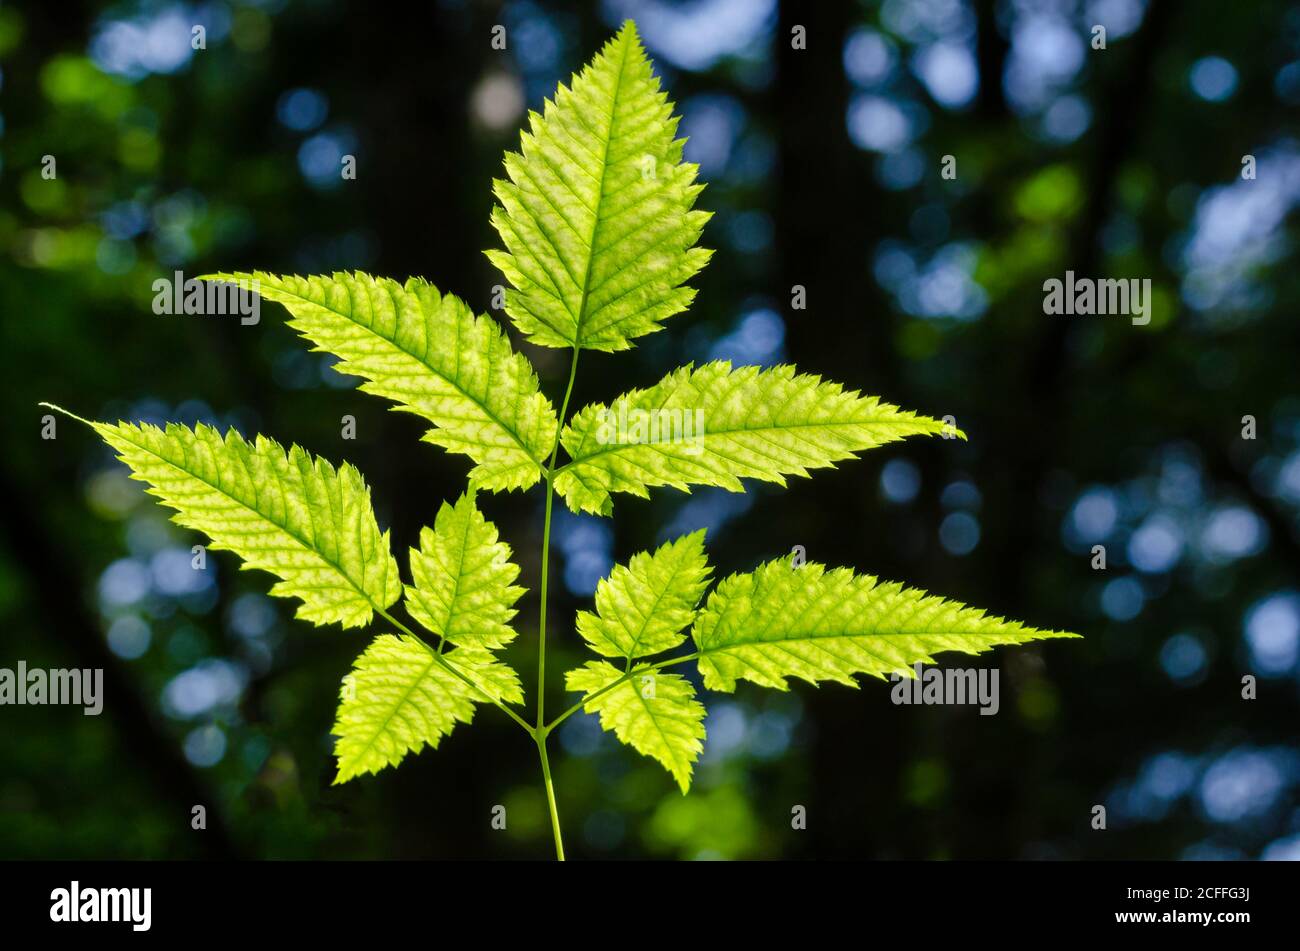 Plante tige avec des feuilles dentelées dans la lumière du soleil sur fond de forêt sombre. Fern comme plante inondée de lumière . Gros plan, photo macro. Banque D'Images